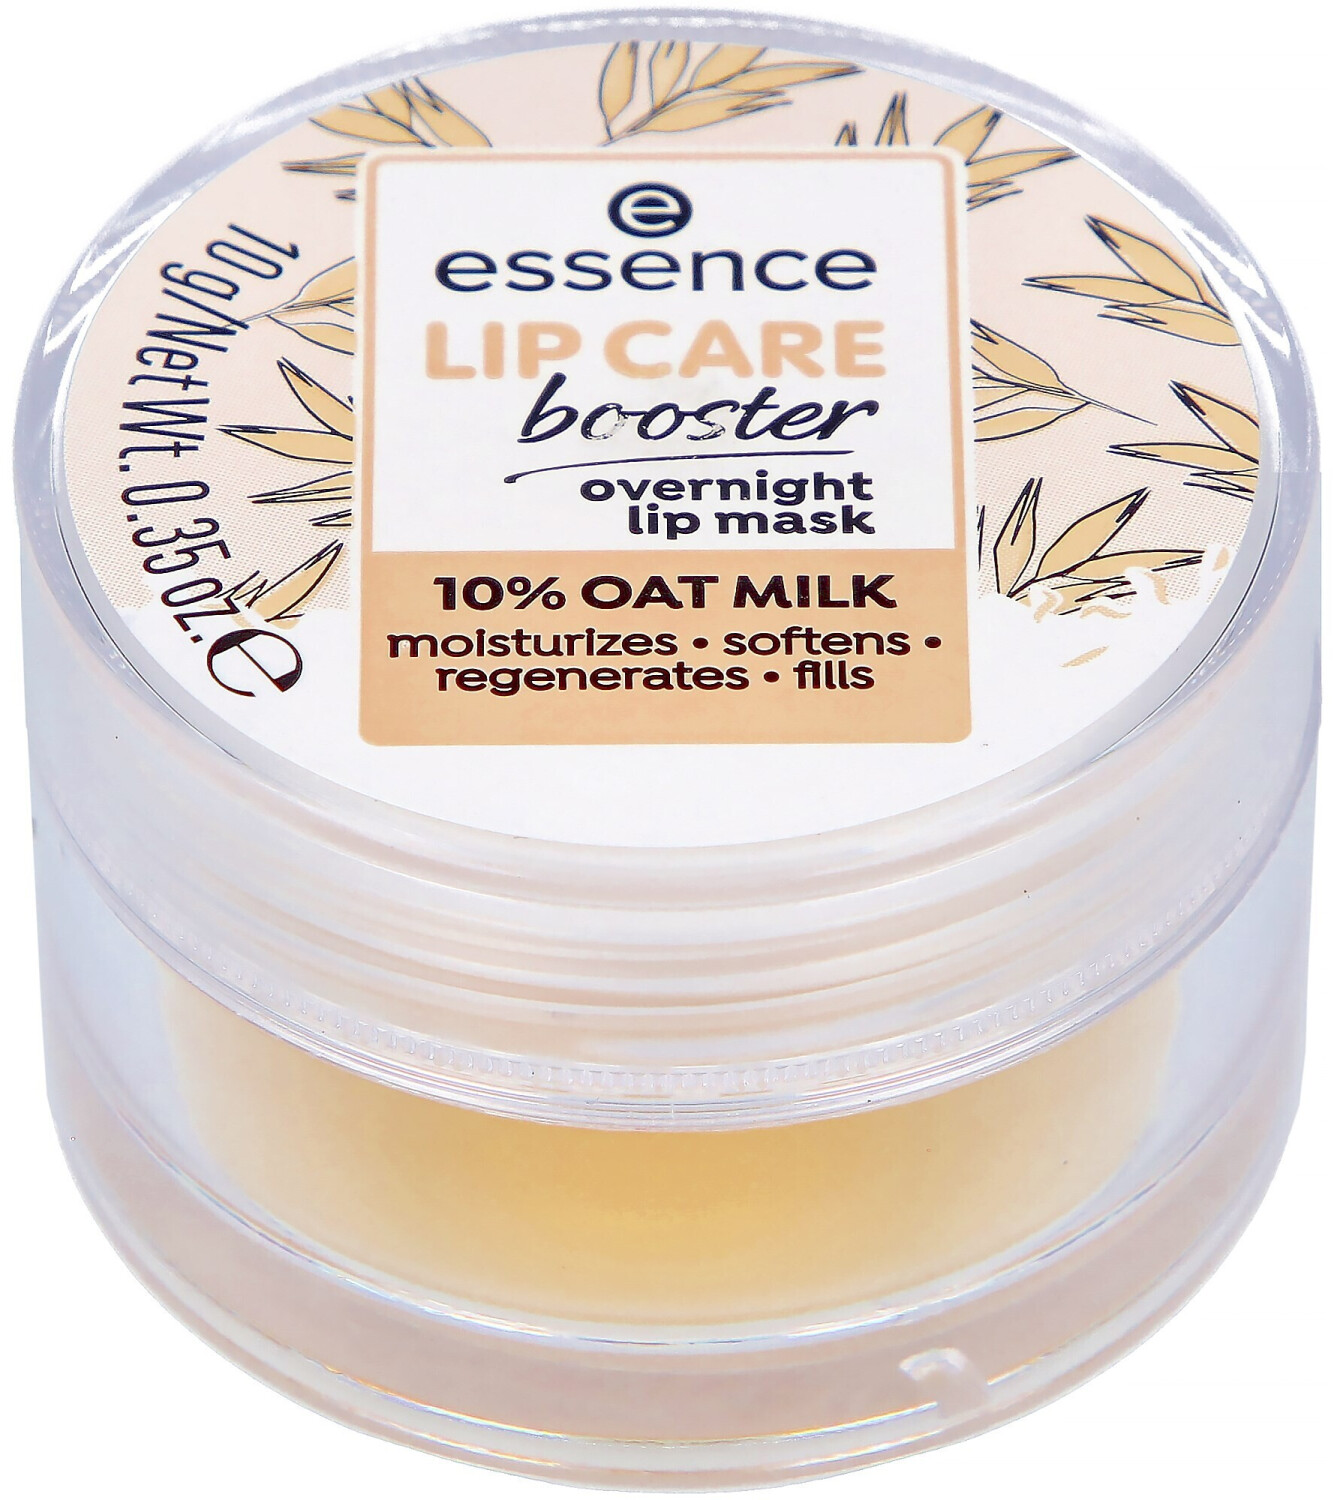 Essence Lip Care Booster Overnight Lip Mask (10g) a € 3,73 (oggi) |  Migliori prezzi e offerte su idealo